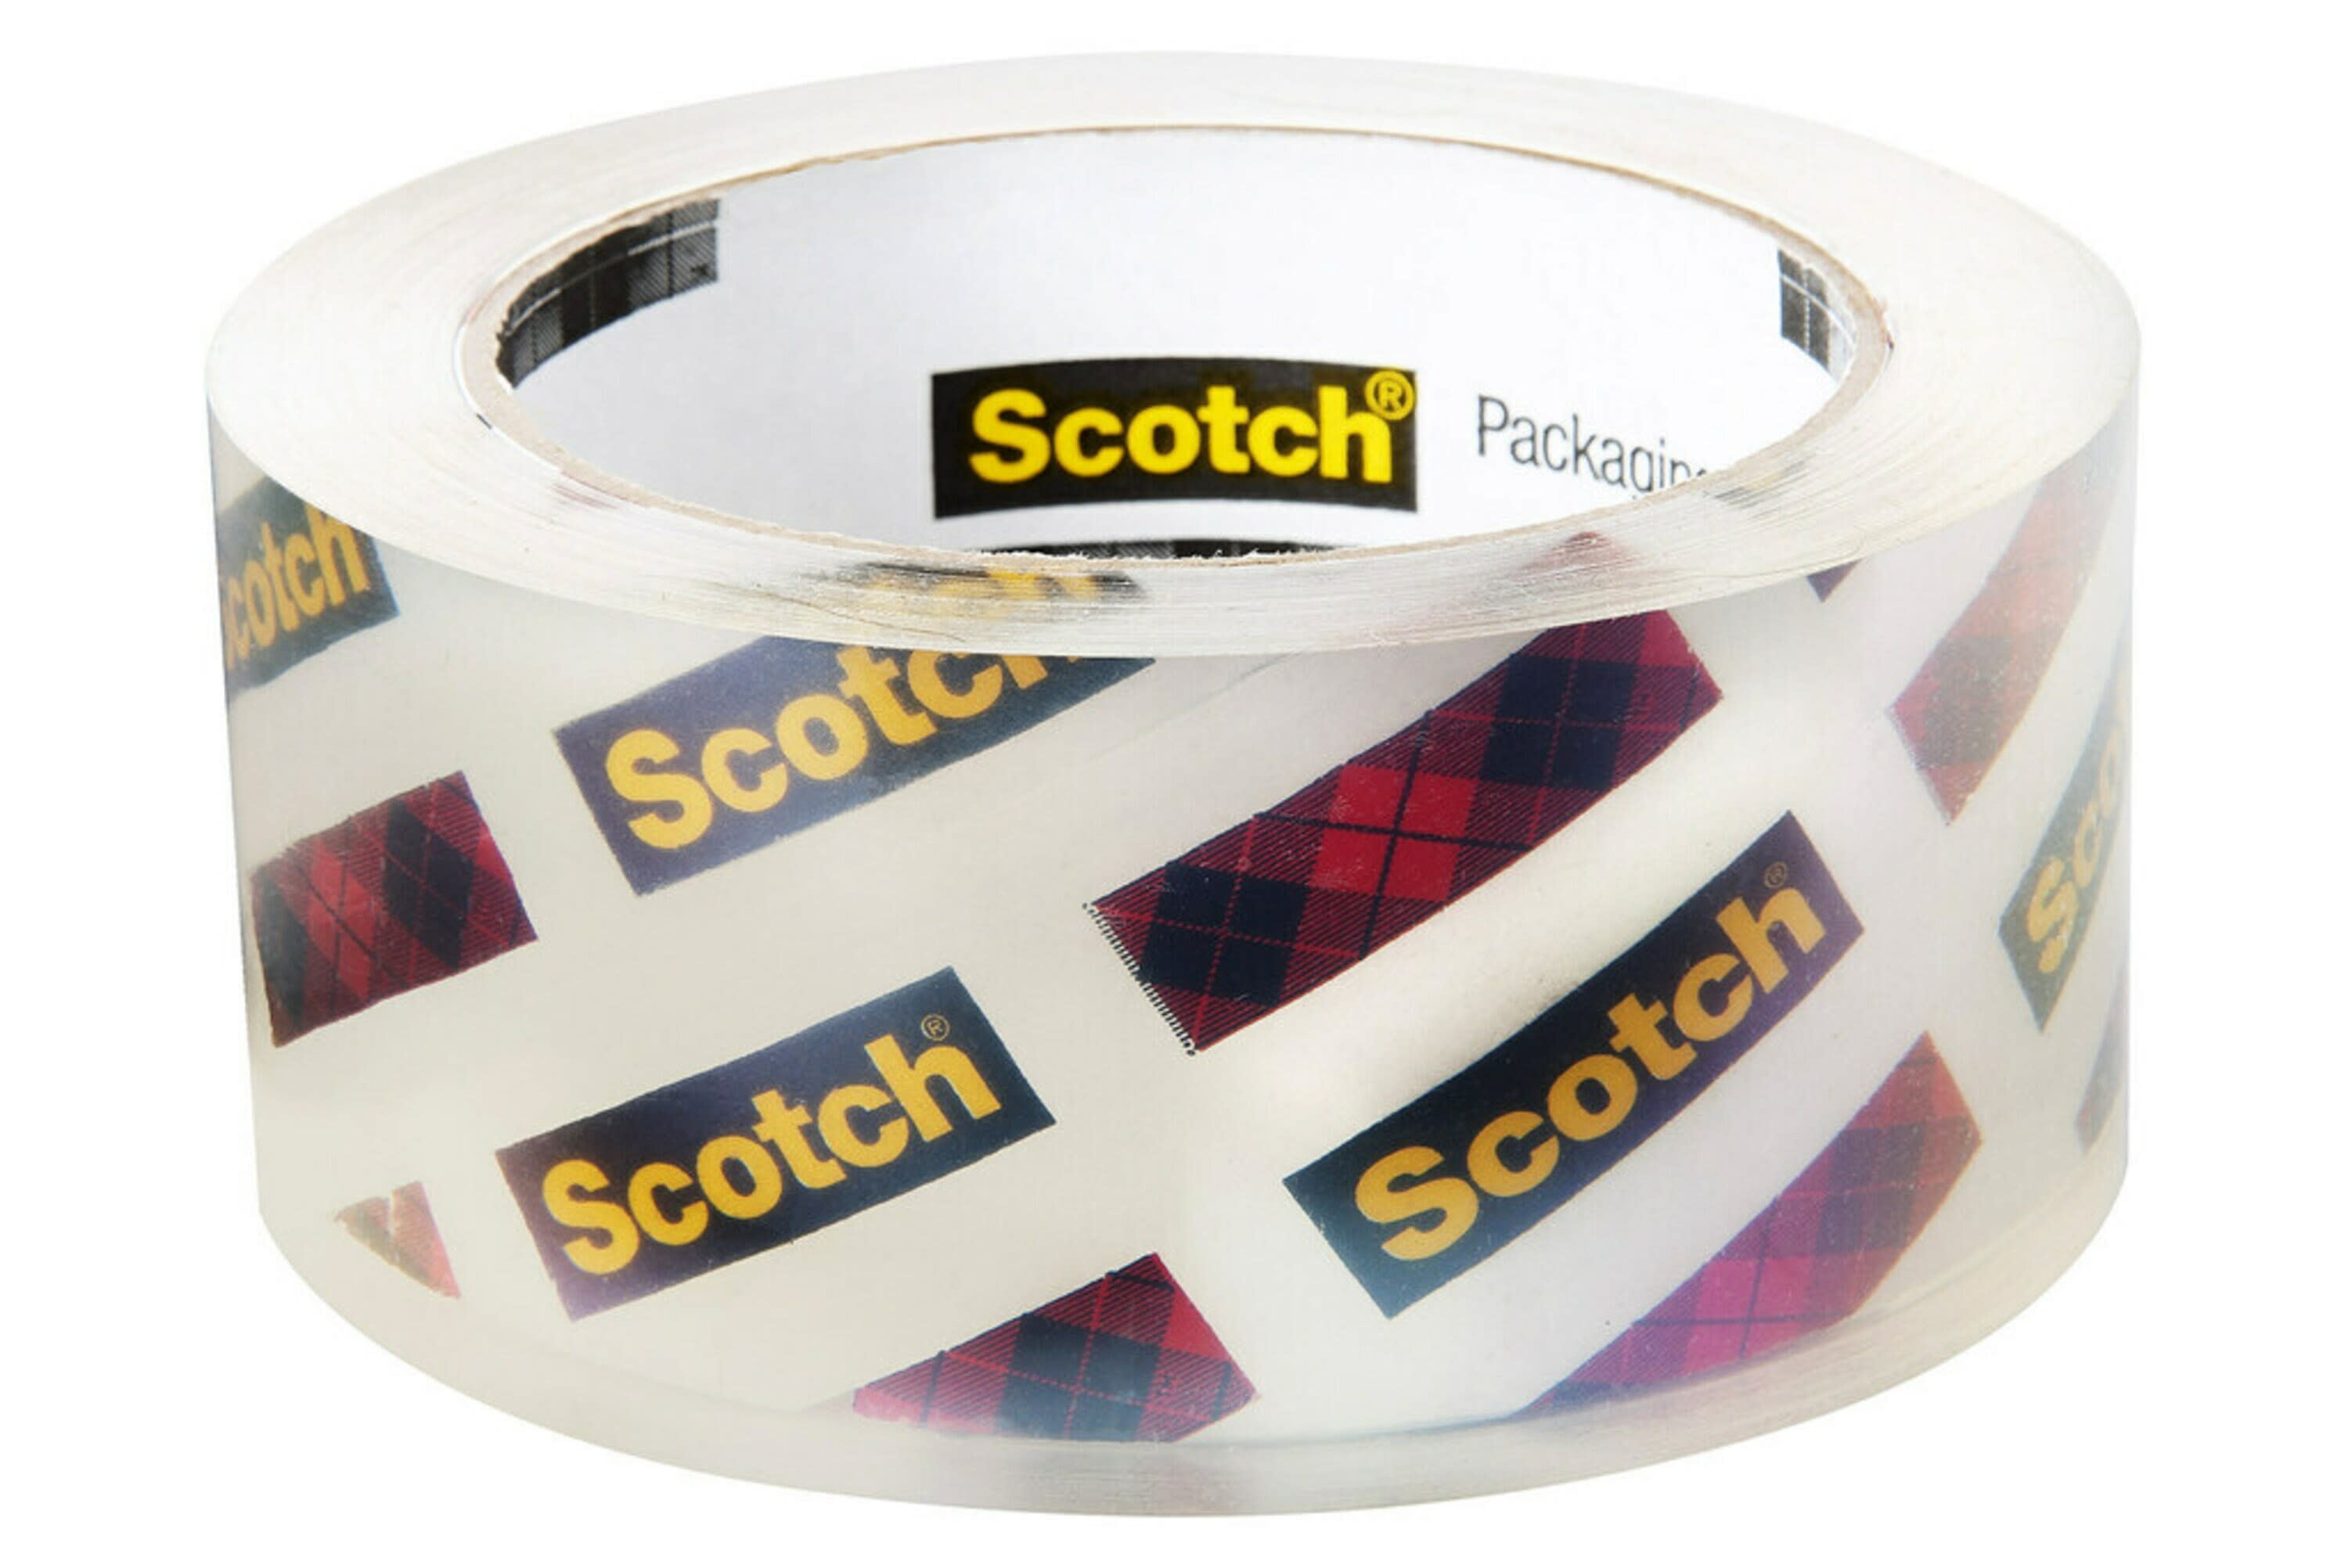 Scotch tape - Bedaya Packing